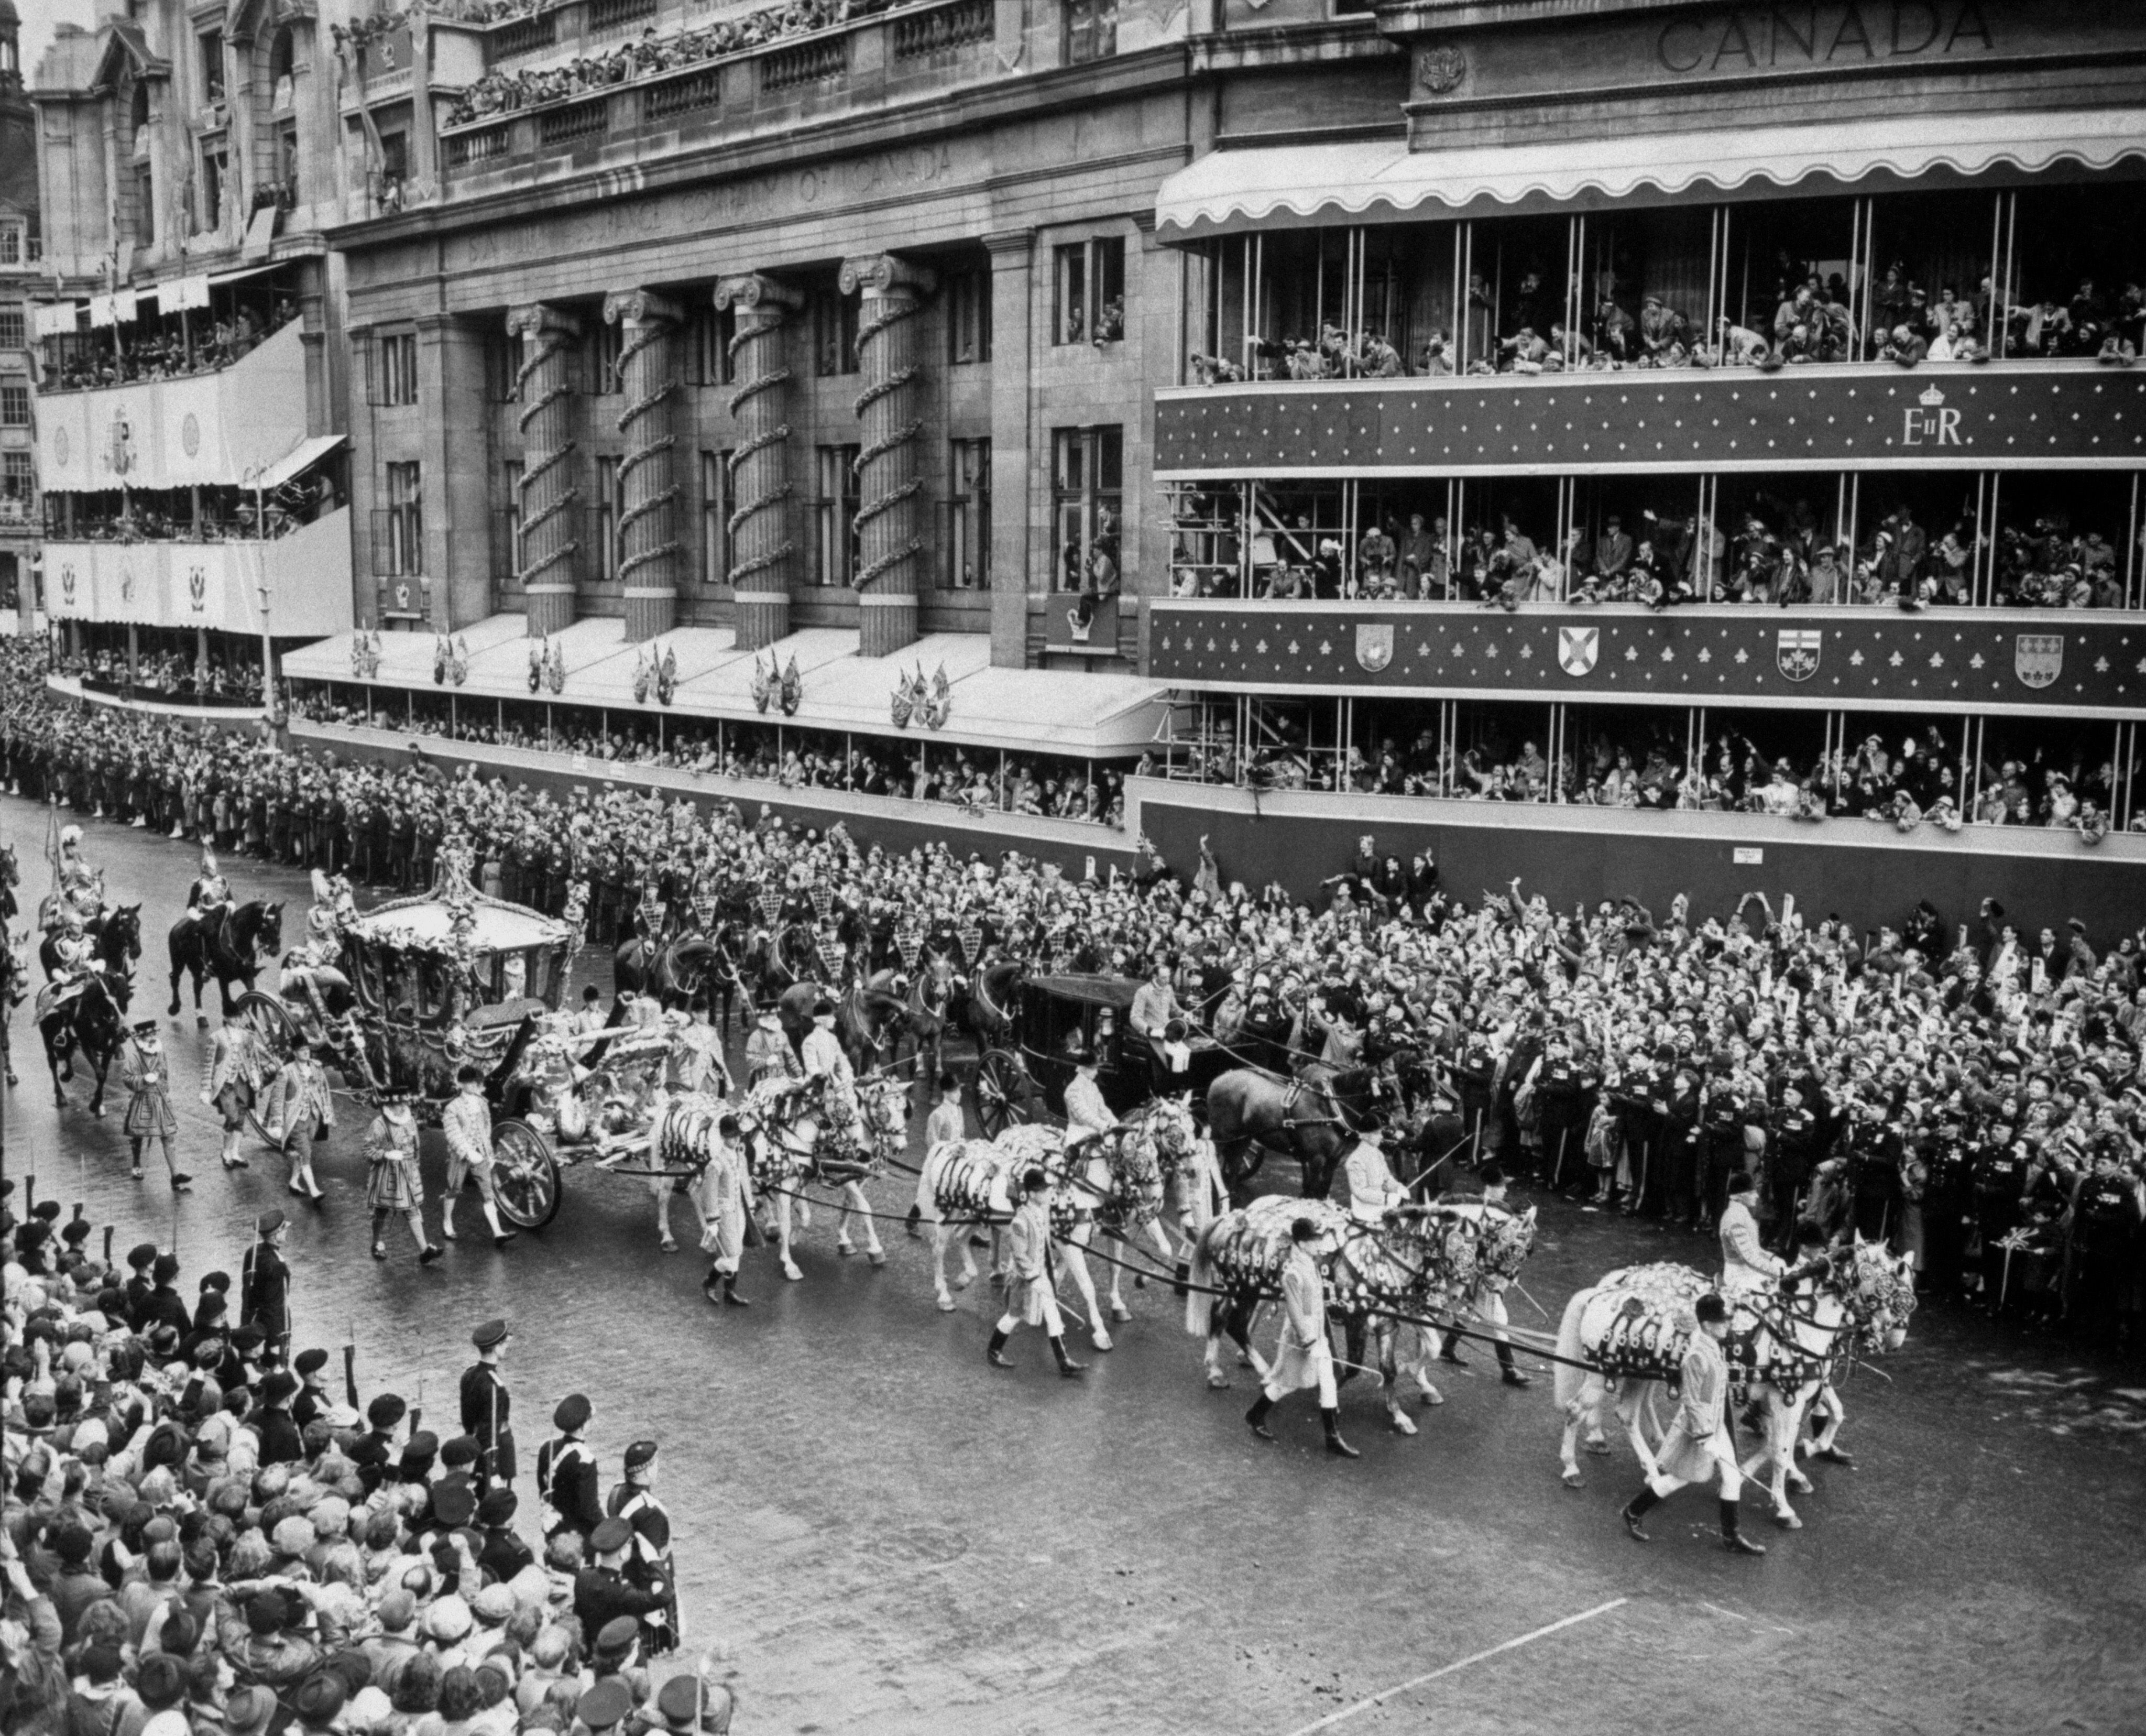 Durante el desfile de la coronación, el carruaje que llevaba al primer ministro Winston Churchill tuvo que detenerse frente a Canada House para dejar paso al Gold State Coach en el que viajaba Isabel II.